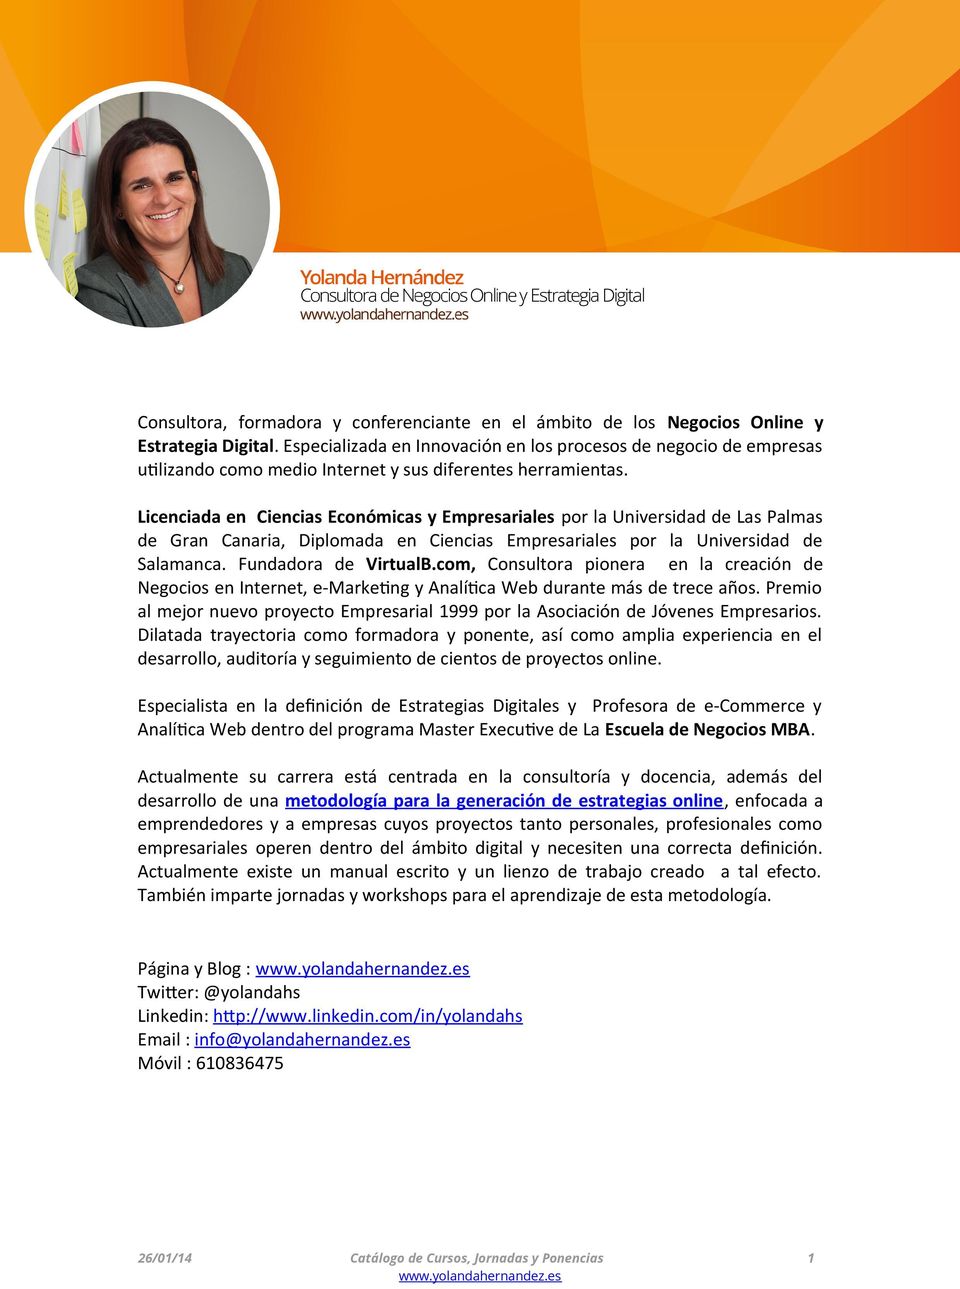 Licenciada en Ciencias Económicas y Empresariales por la Universidad de Las Palmas de Gran Canaria, Diplomada en Ciencias Empresariales por la Universidad de Salamanca. Fundadora de VirtualB.